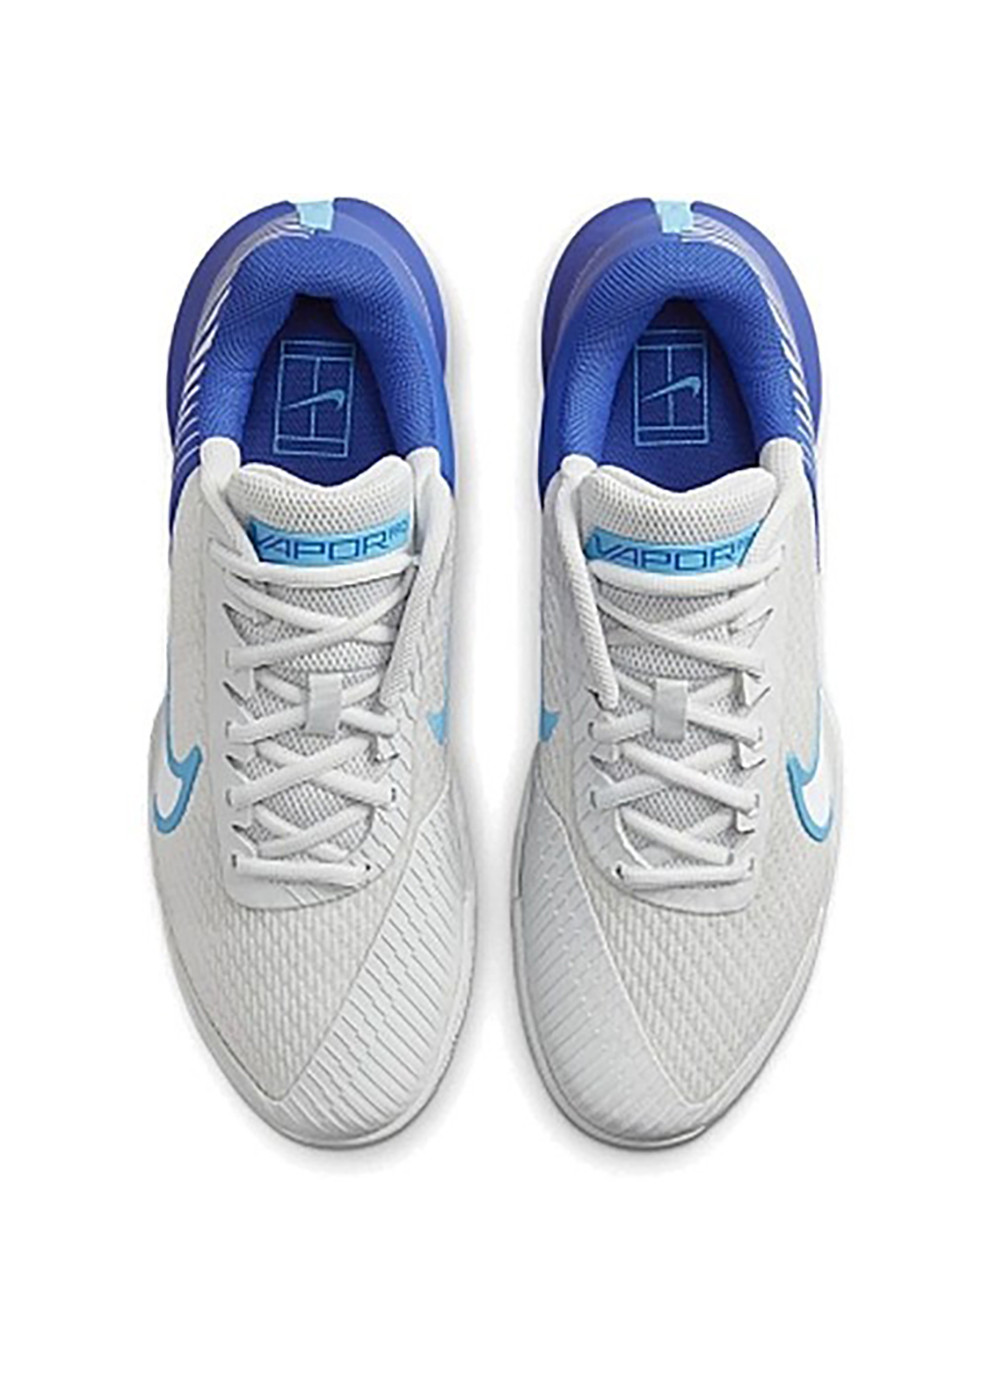 Синие демисезонные кроссовки zoom vapor pro 2 cly Nike